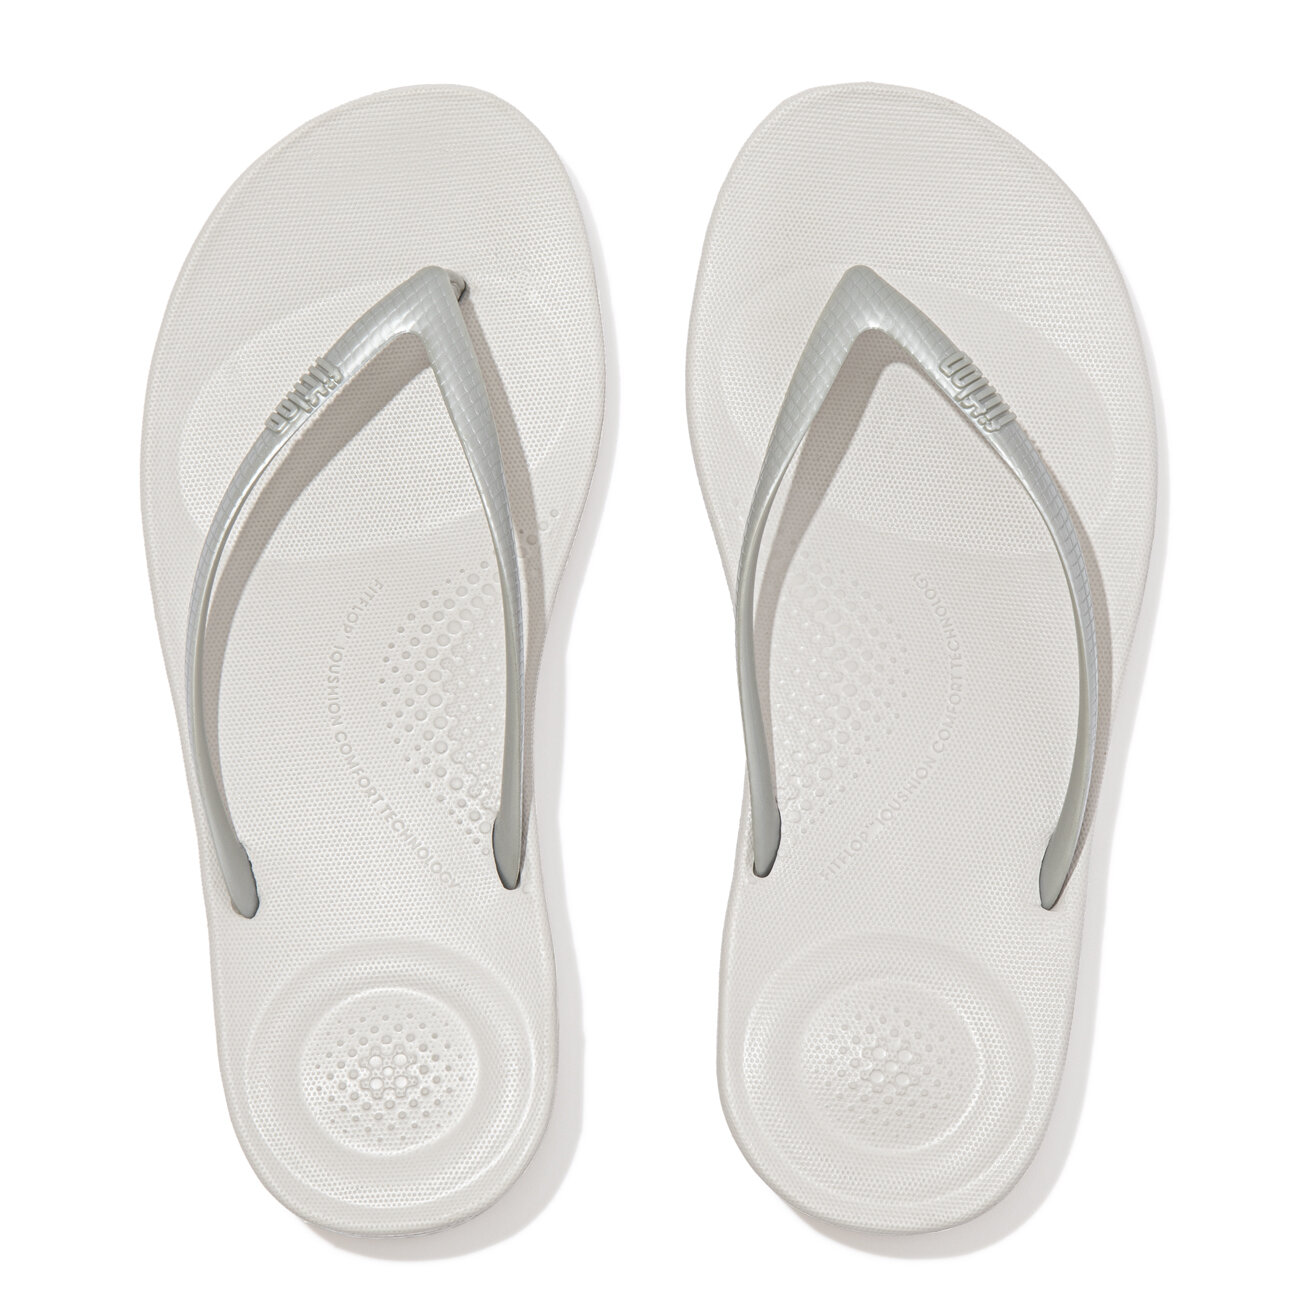 verdrietig Maak een naam Middellandse Zee Iqushion Ergonomische Slippers voor Vrouwen - Zilver | Original Brands